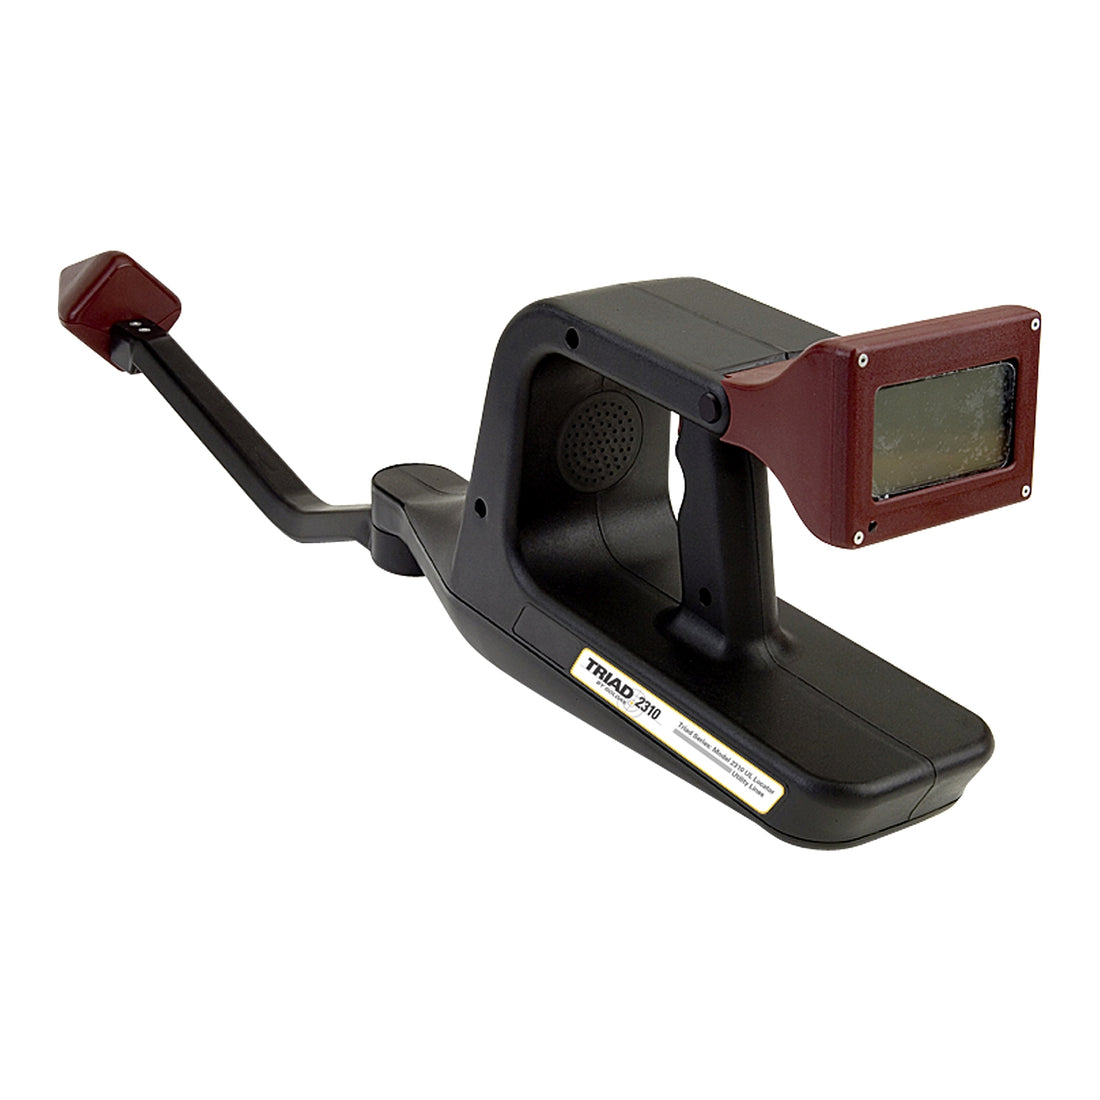 Goldak TRIAD 2310-SC Camera and Sonde Locator